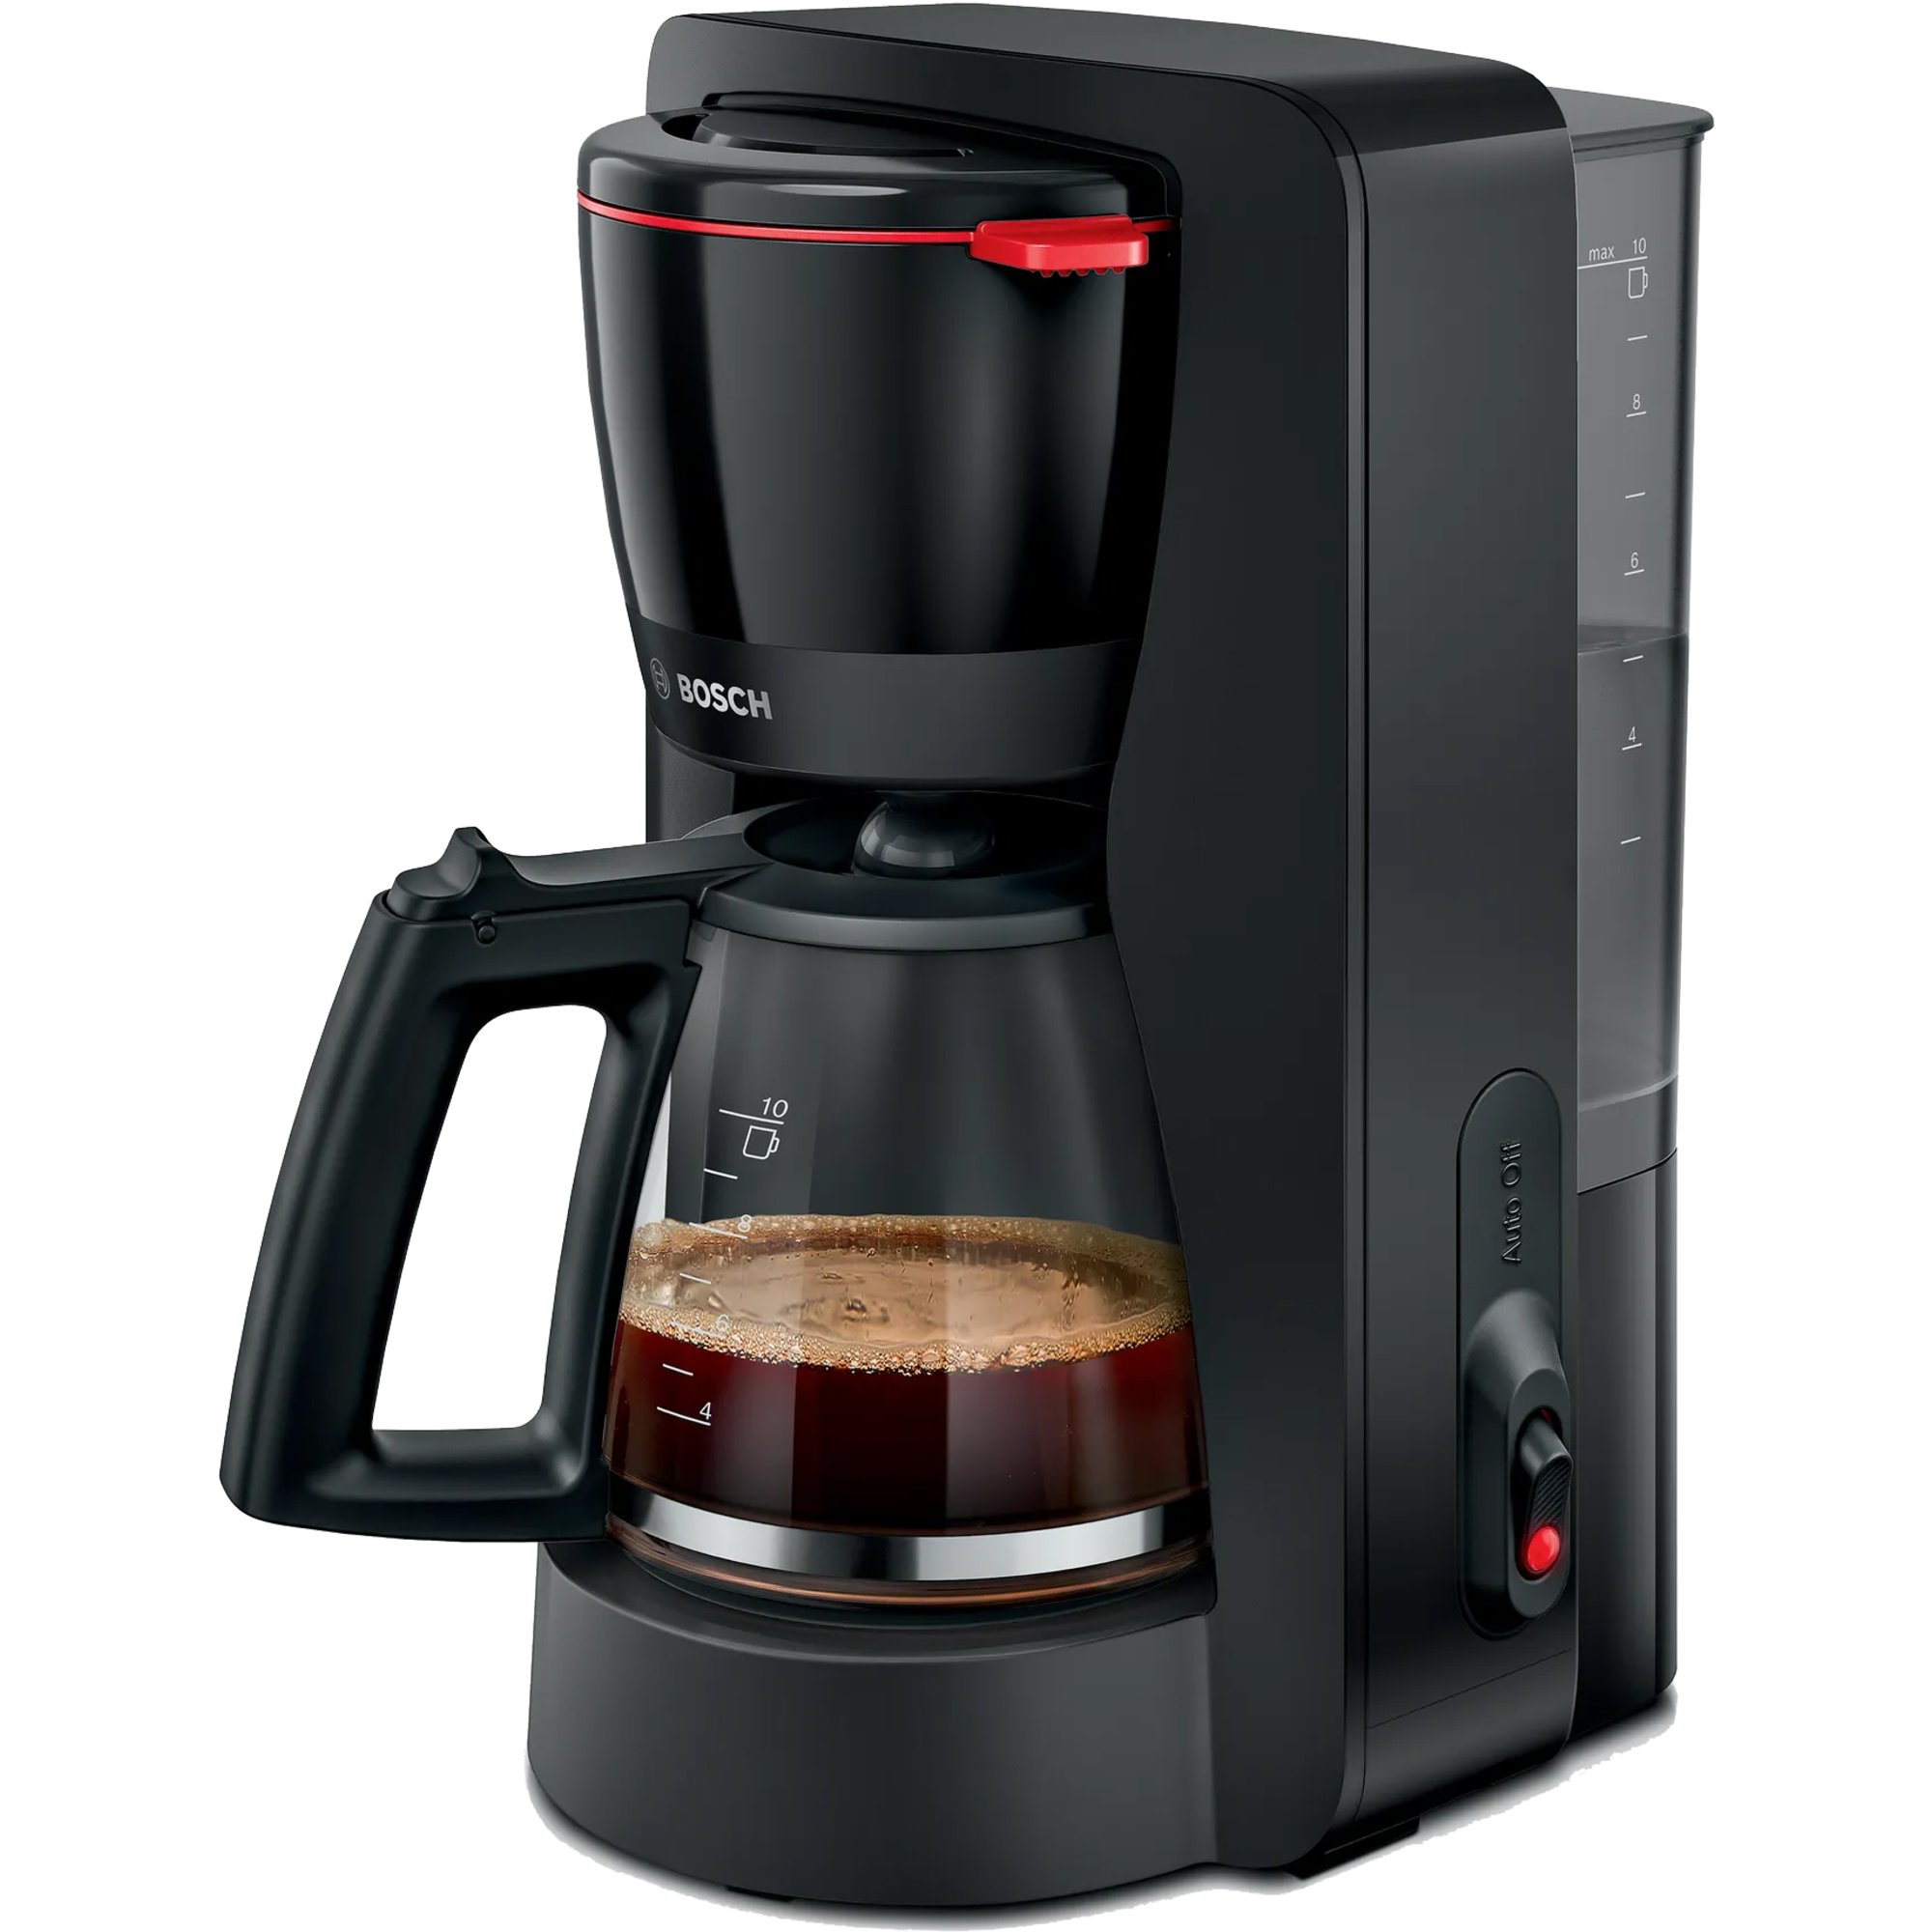 Bosch MyMoment kaffebryggare med glaskanna svart